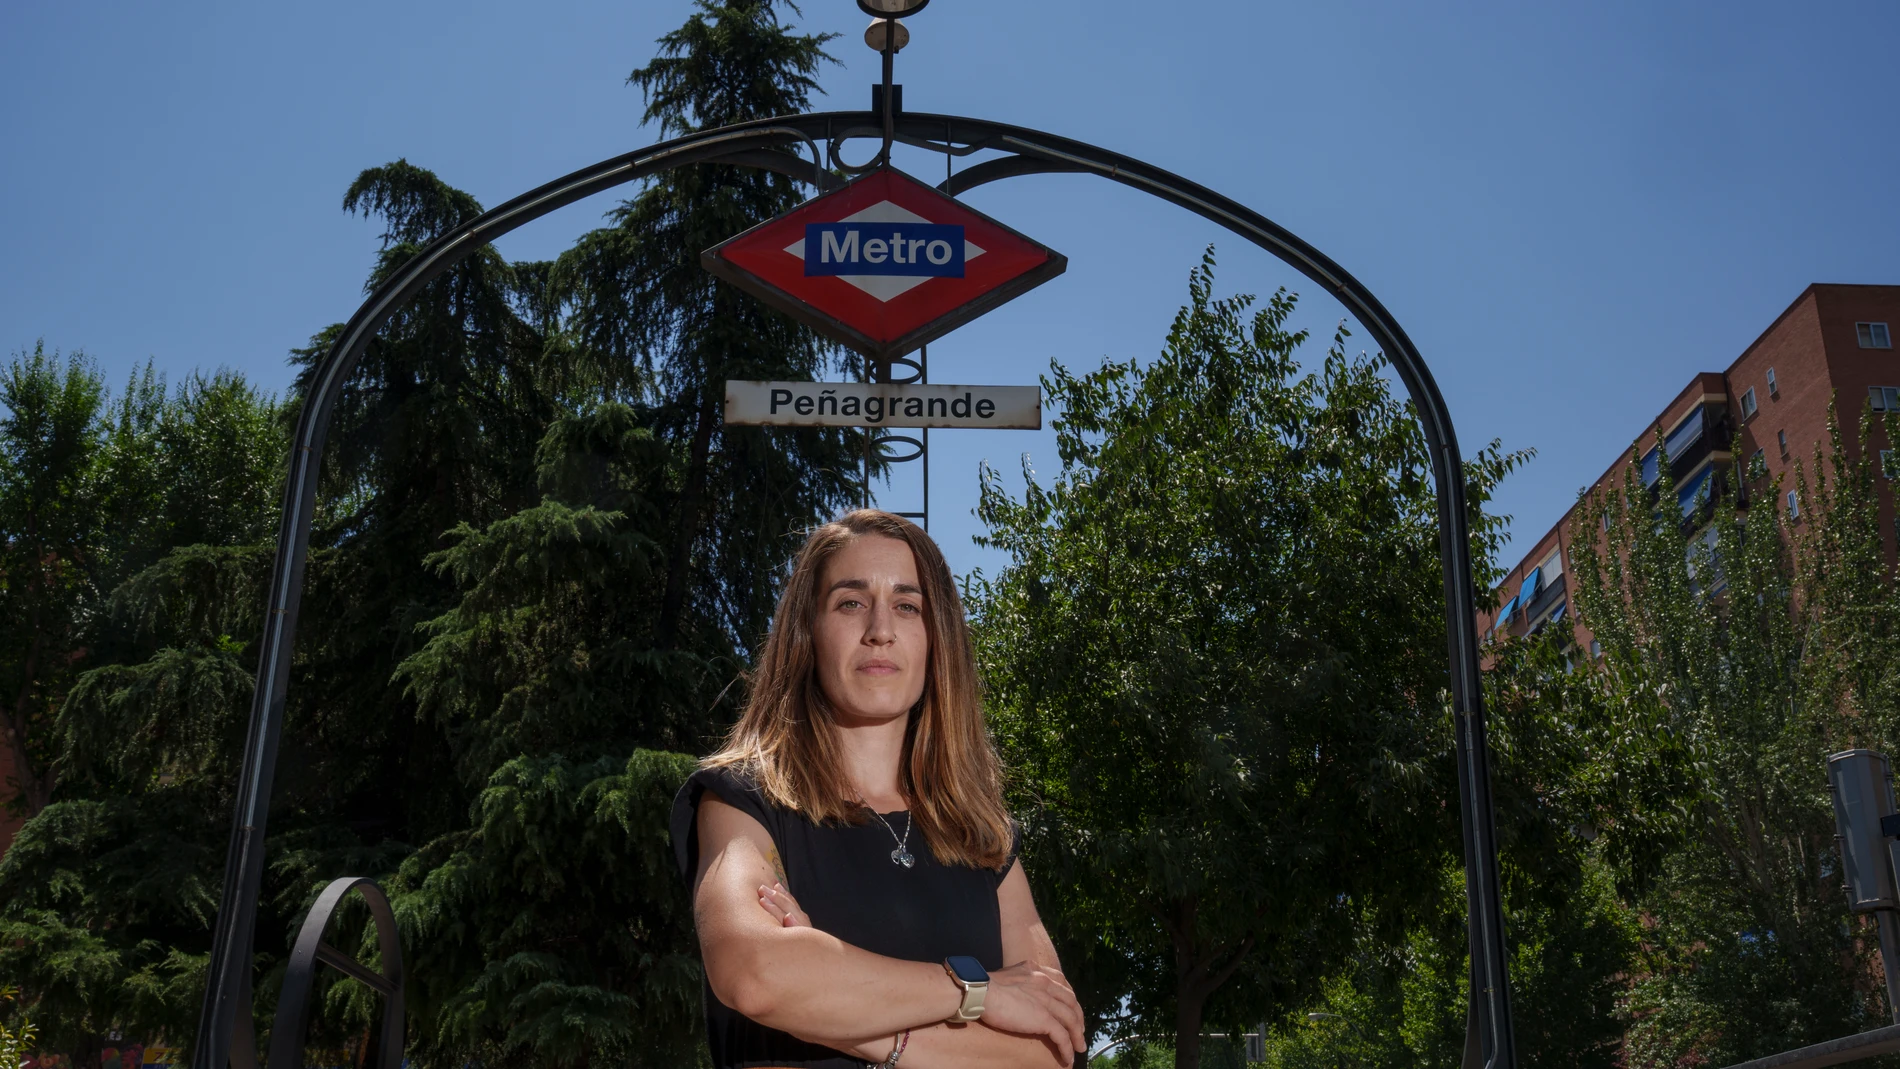 Alicia, hija de Santos González, trabajador de Metro fallecido en 2021 en la estación de metro en la que su padre denunció su situación